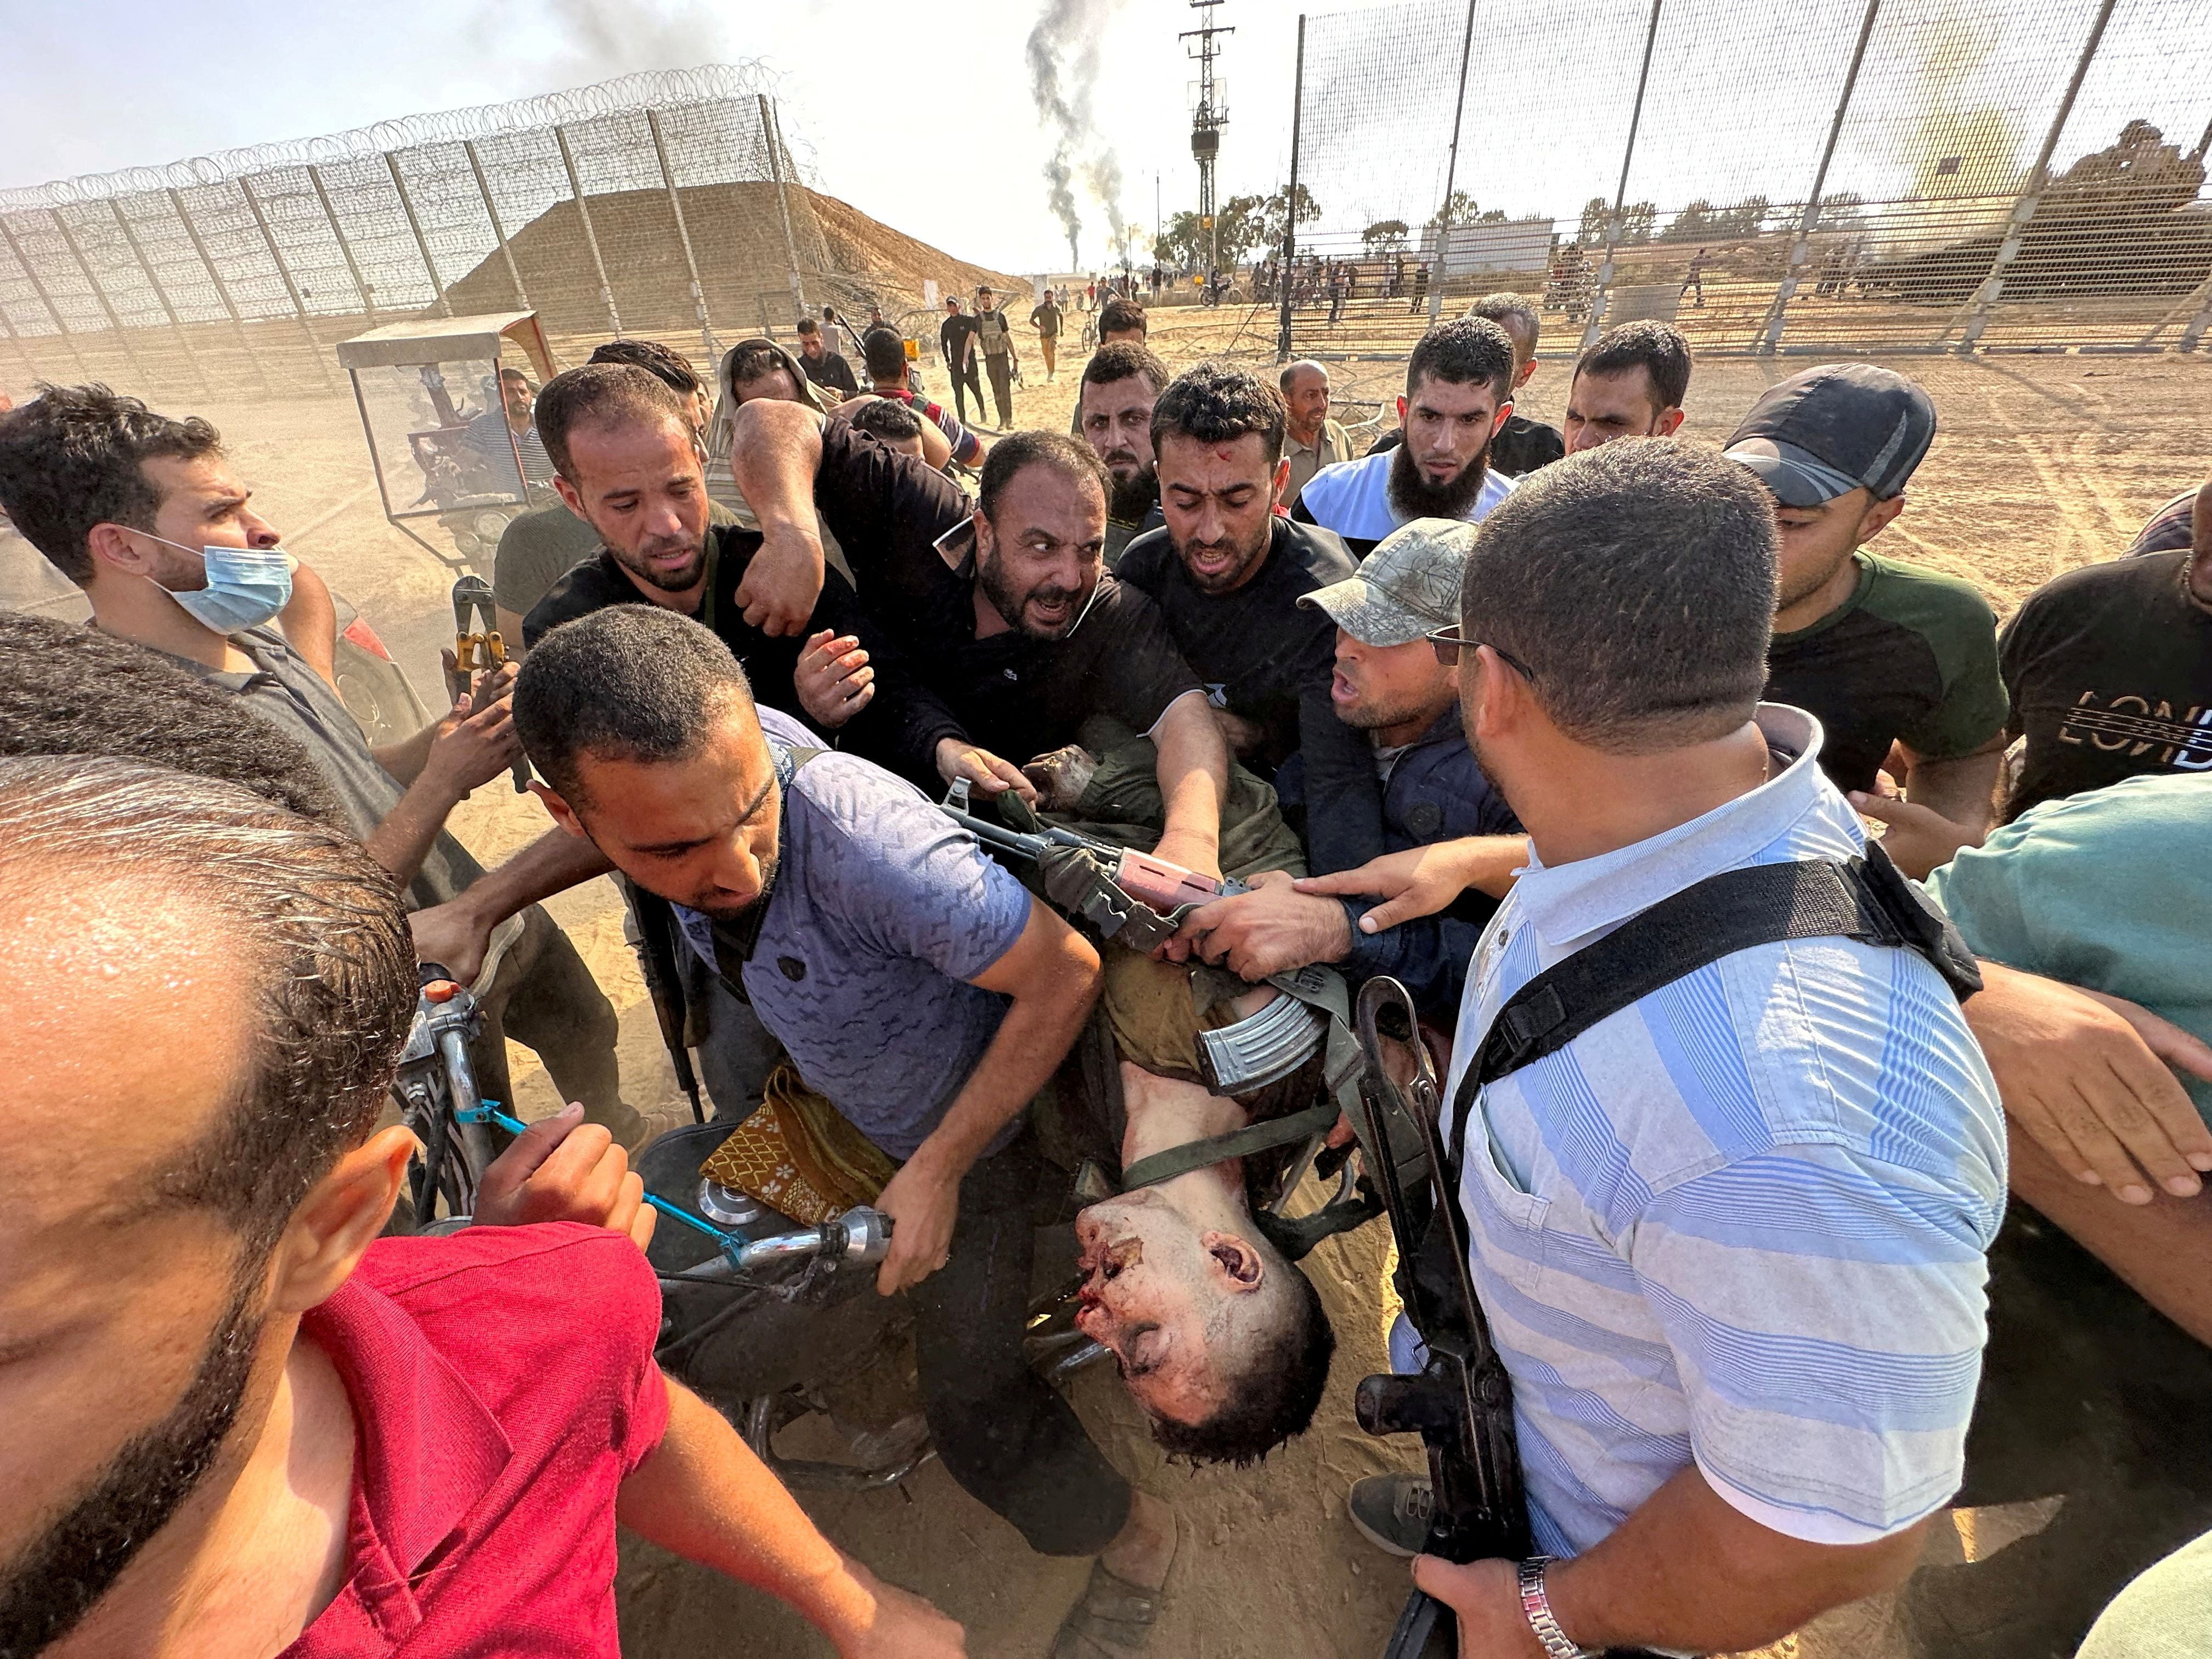 Esta impactante imagen sacudió al mundo el sábado 7 de octubre. terroristas palestinos se llevan a Gaza el cuerpo de un soldado israelí. Cargan el cadáver como si fuera un trofeo. La foto reveló al mundo el horror de la invasión de Hamas al sur del país (Reuters)